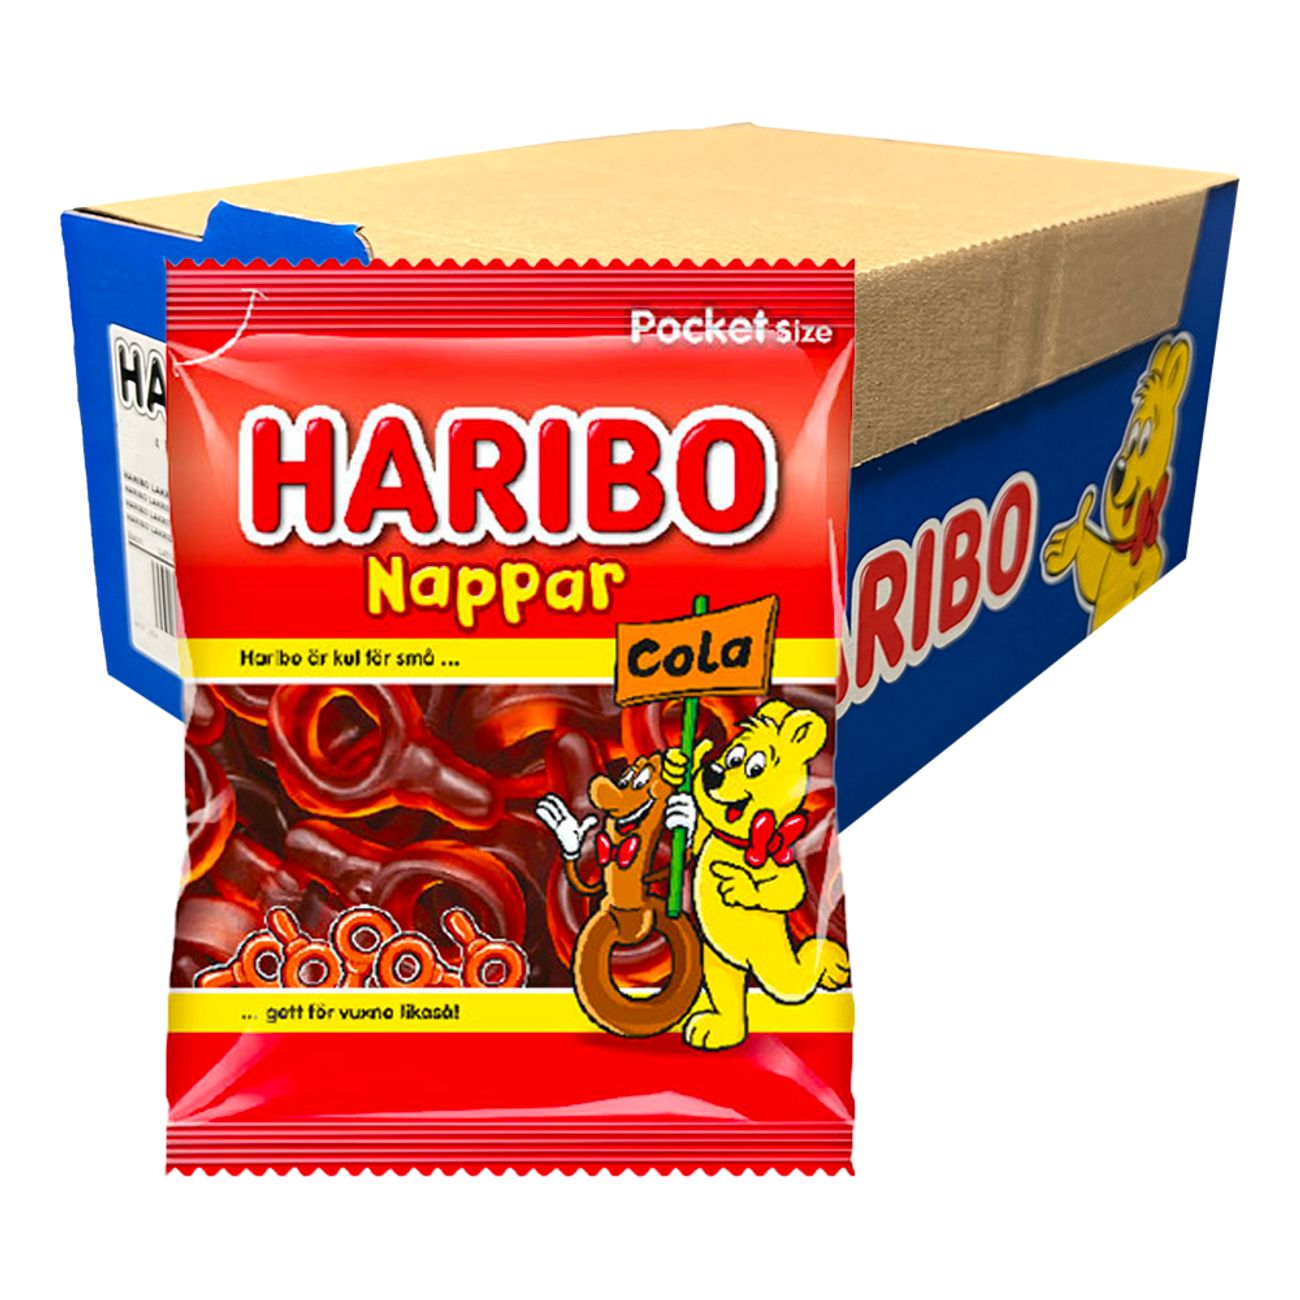 haribo-colanappar-storpack-69513-2